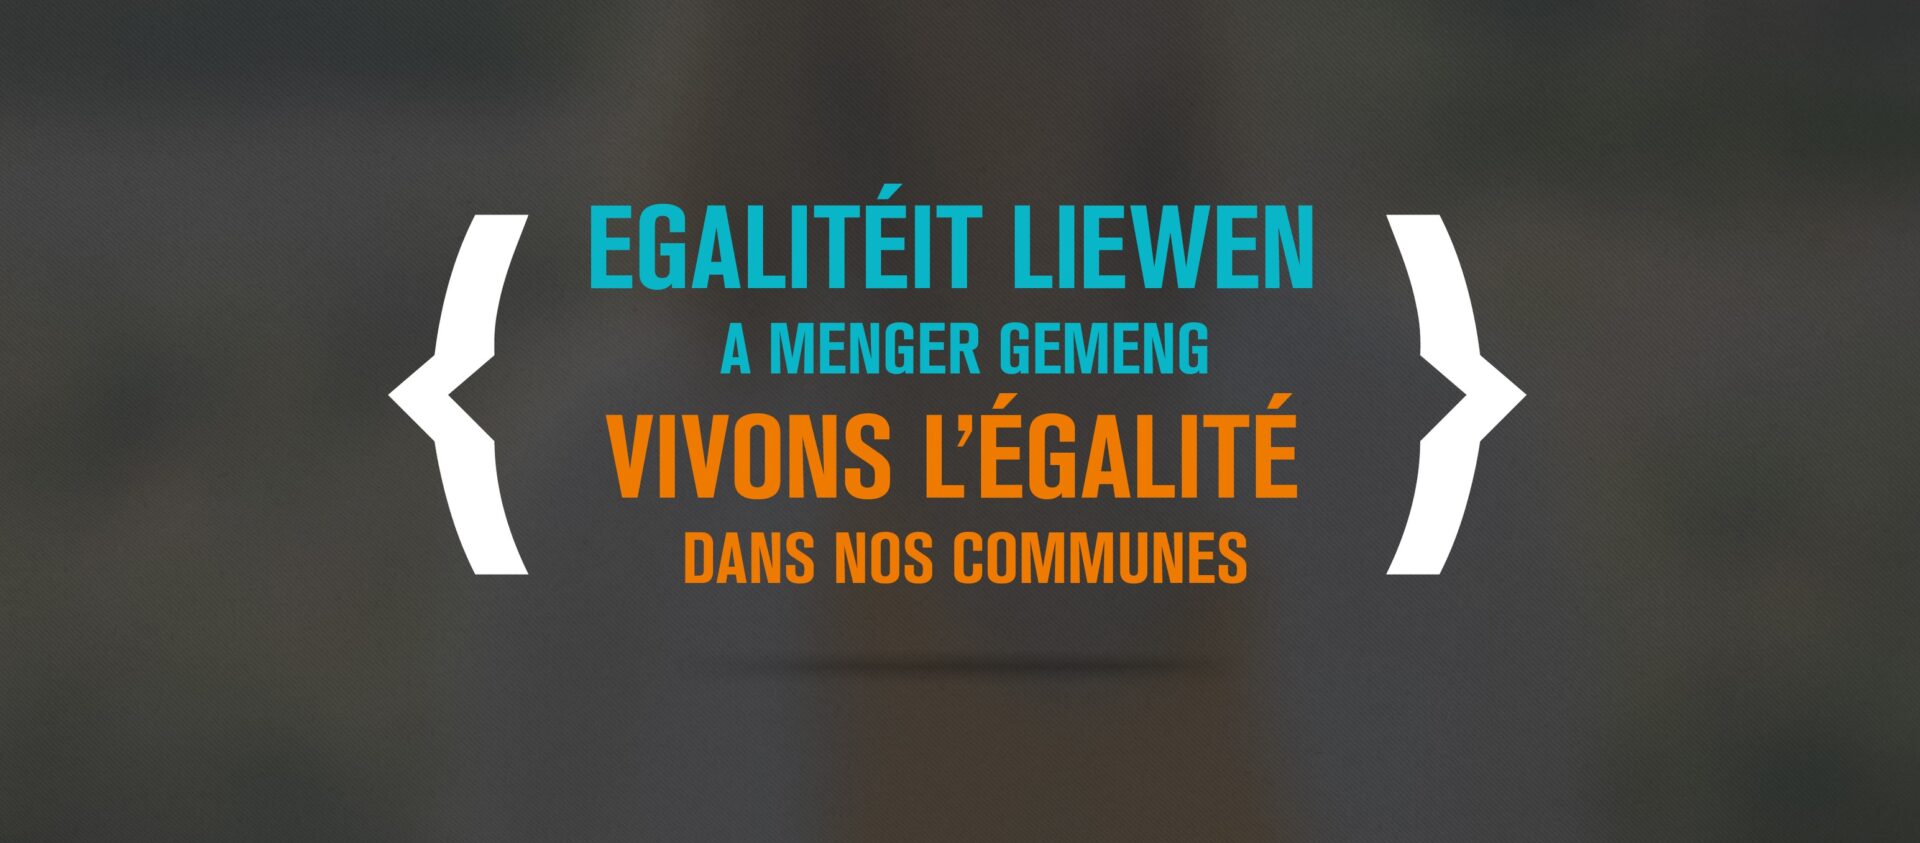 Campagne "Egalitéit liewen!"